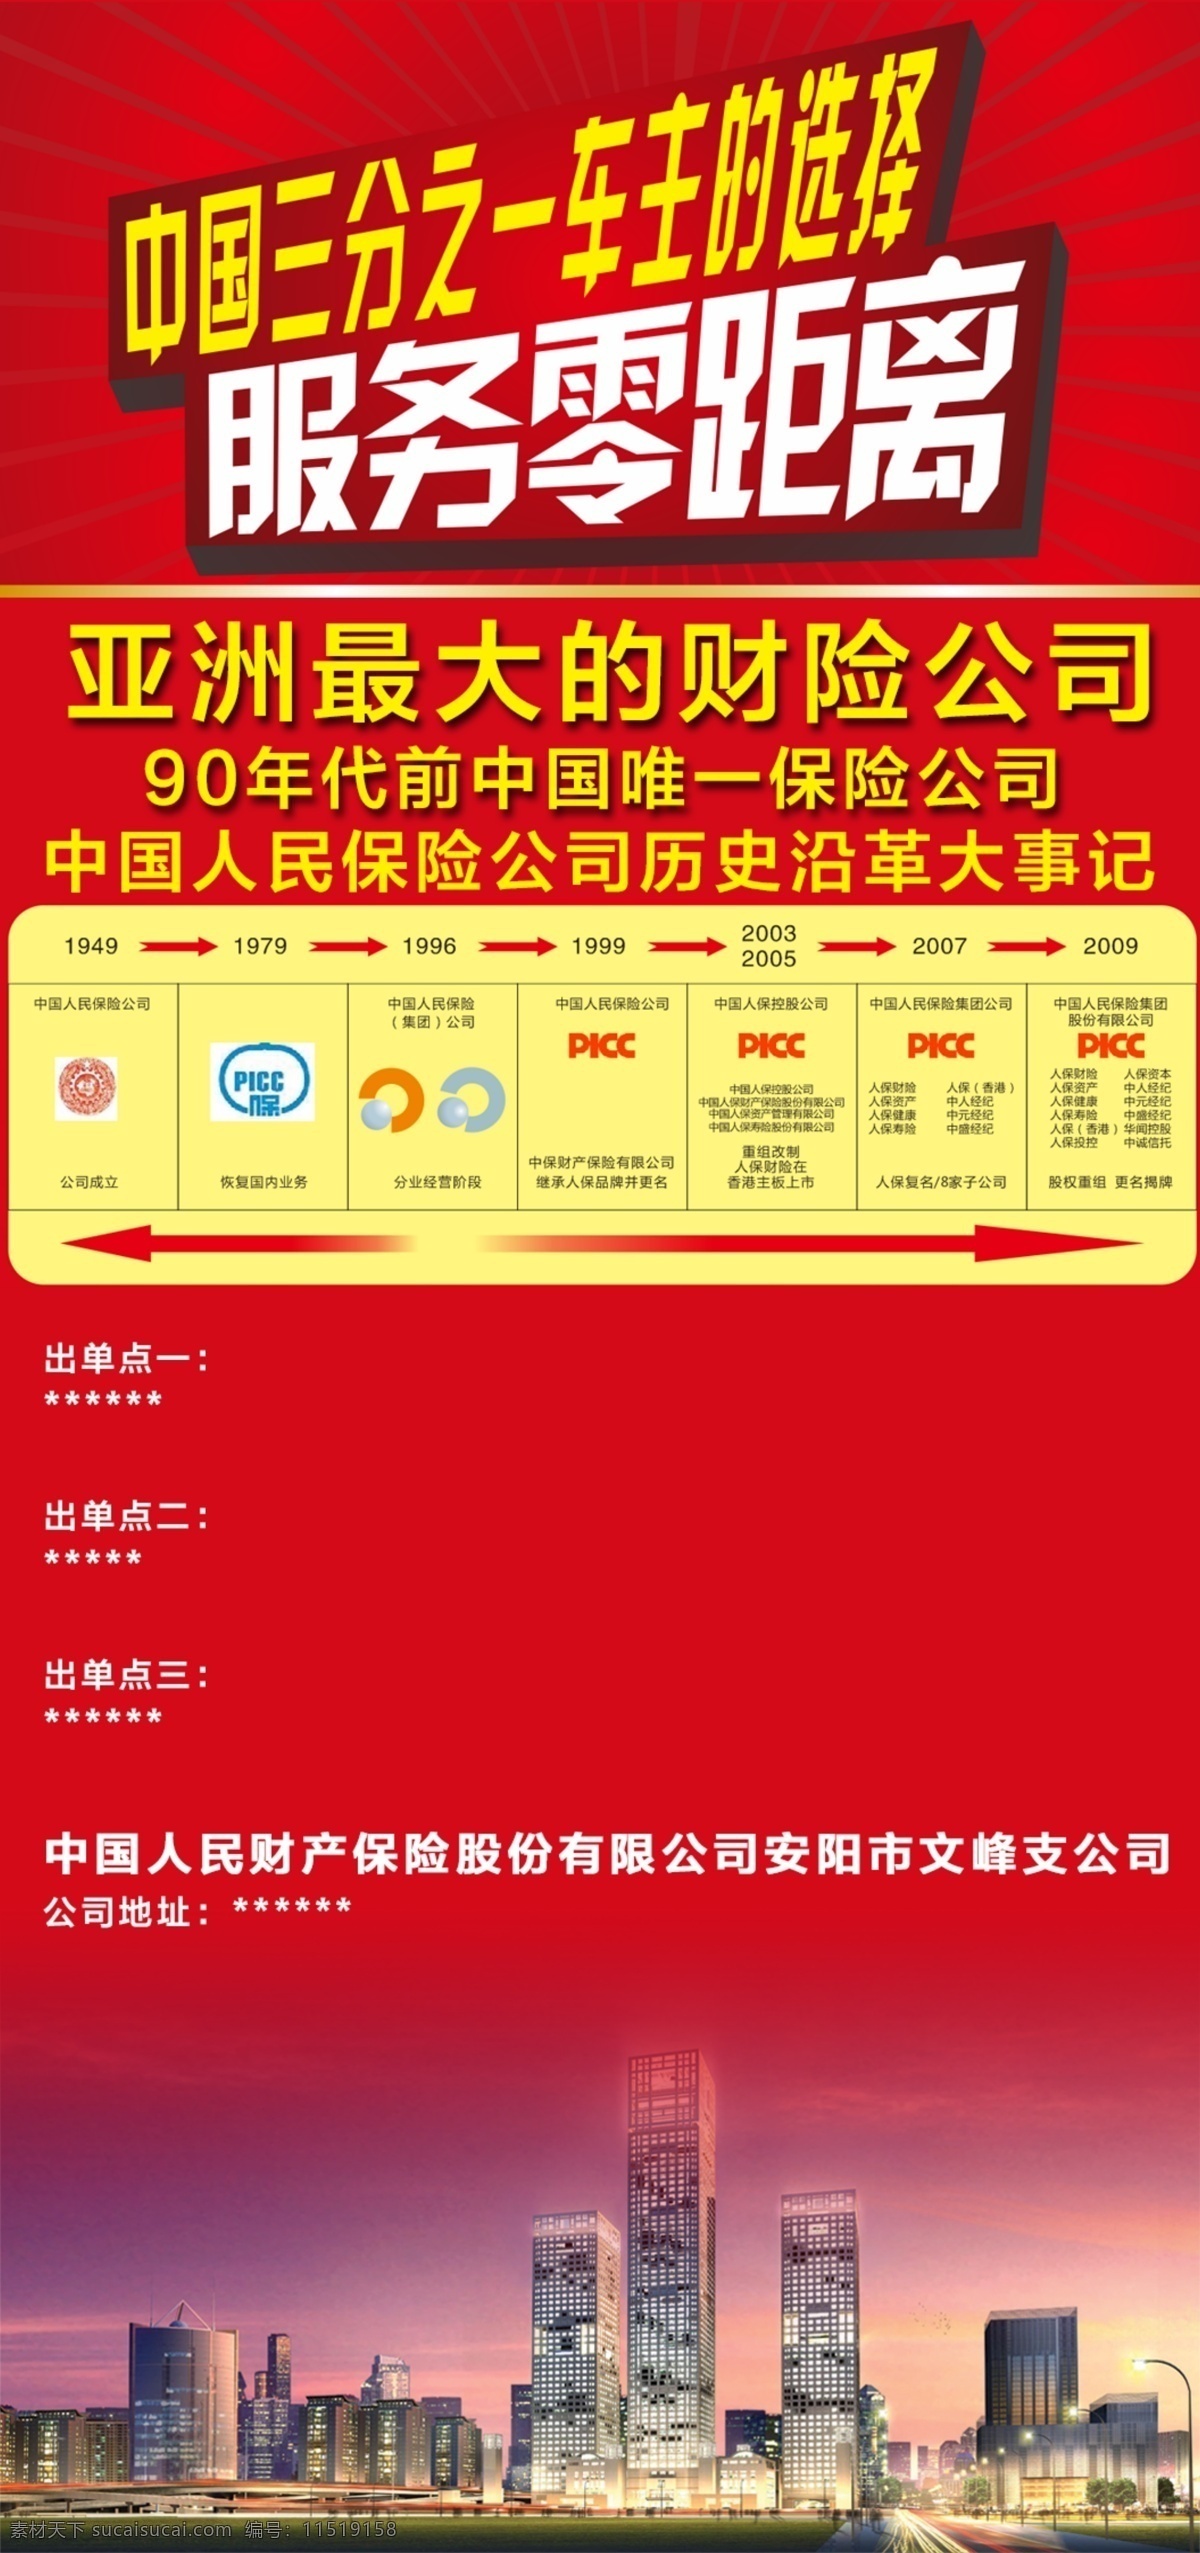 中国人保财险 中国人保 展架 发展历史 红色